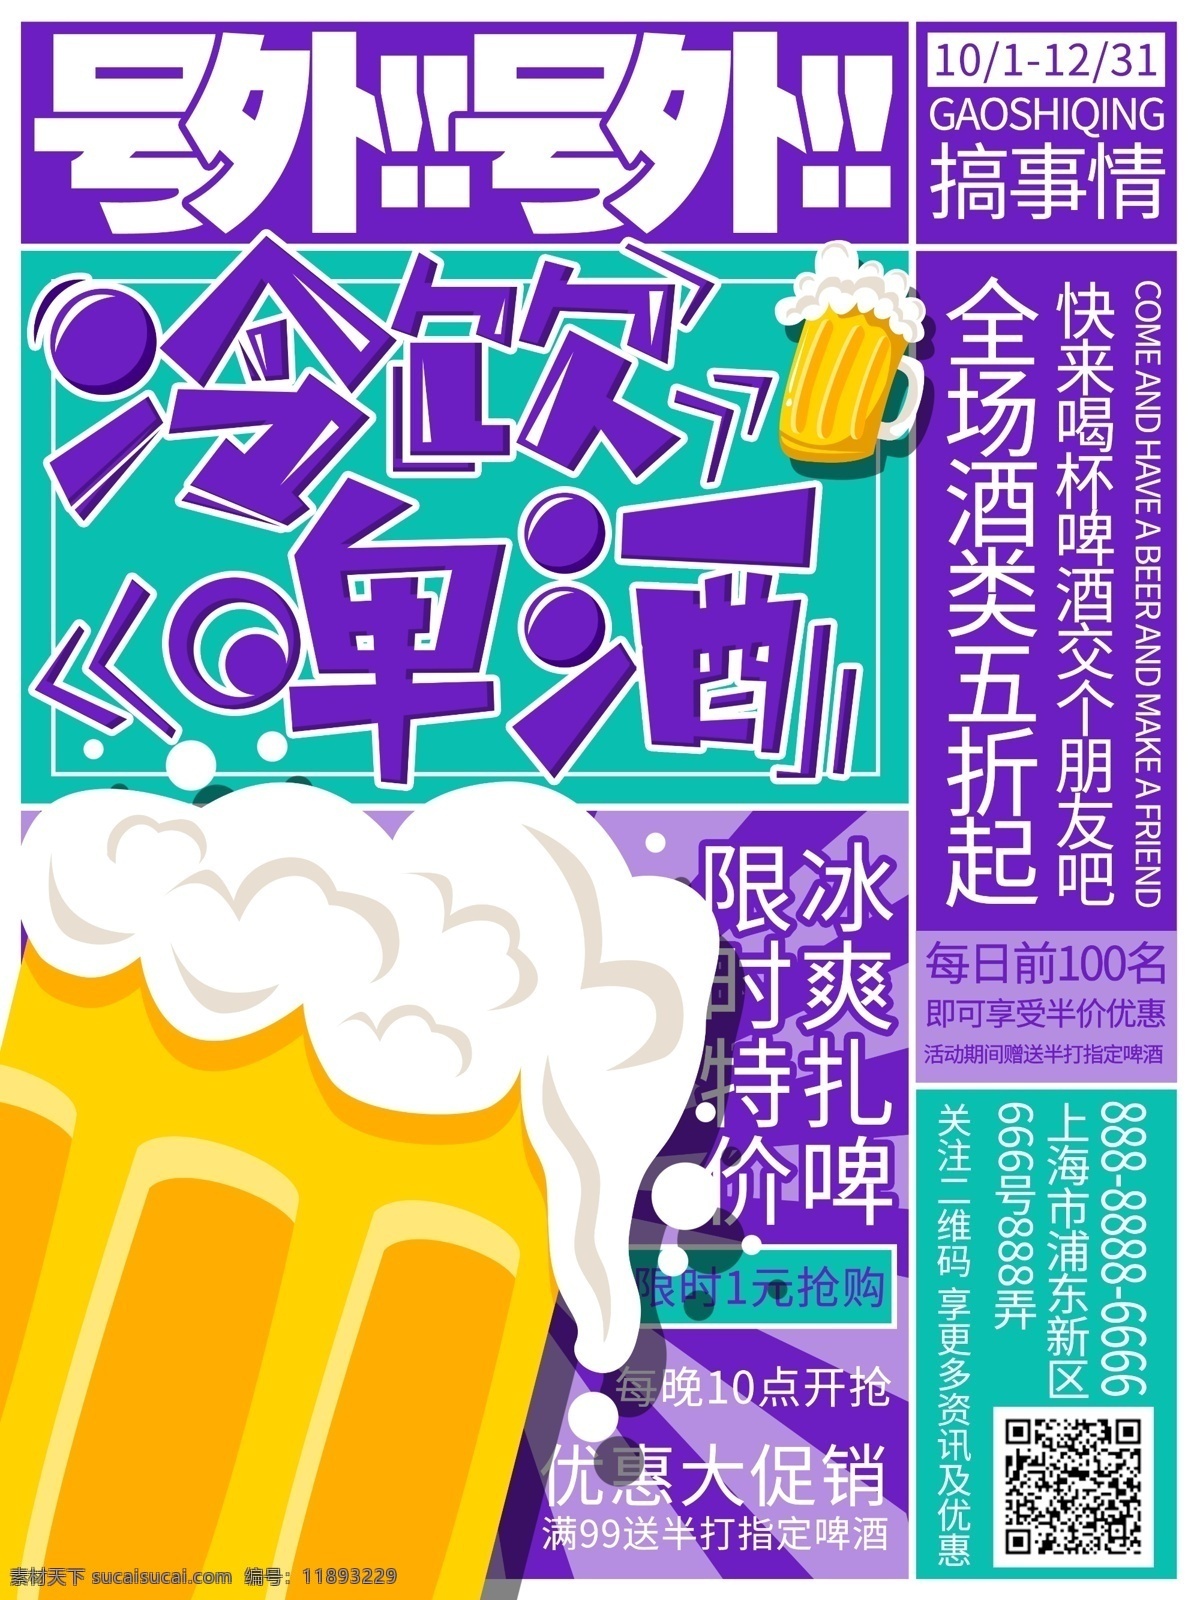 原创 手绘 冷饮 啤酒 促销 海报 饮品 扎啤 特价 宣传单 复古 对比色 酒 限时促销 促销海报